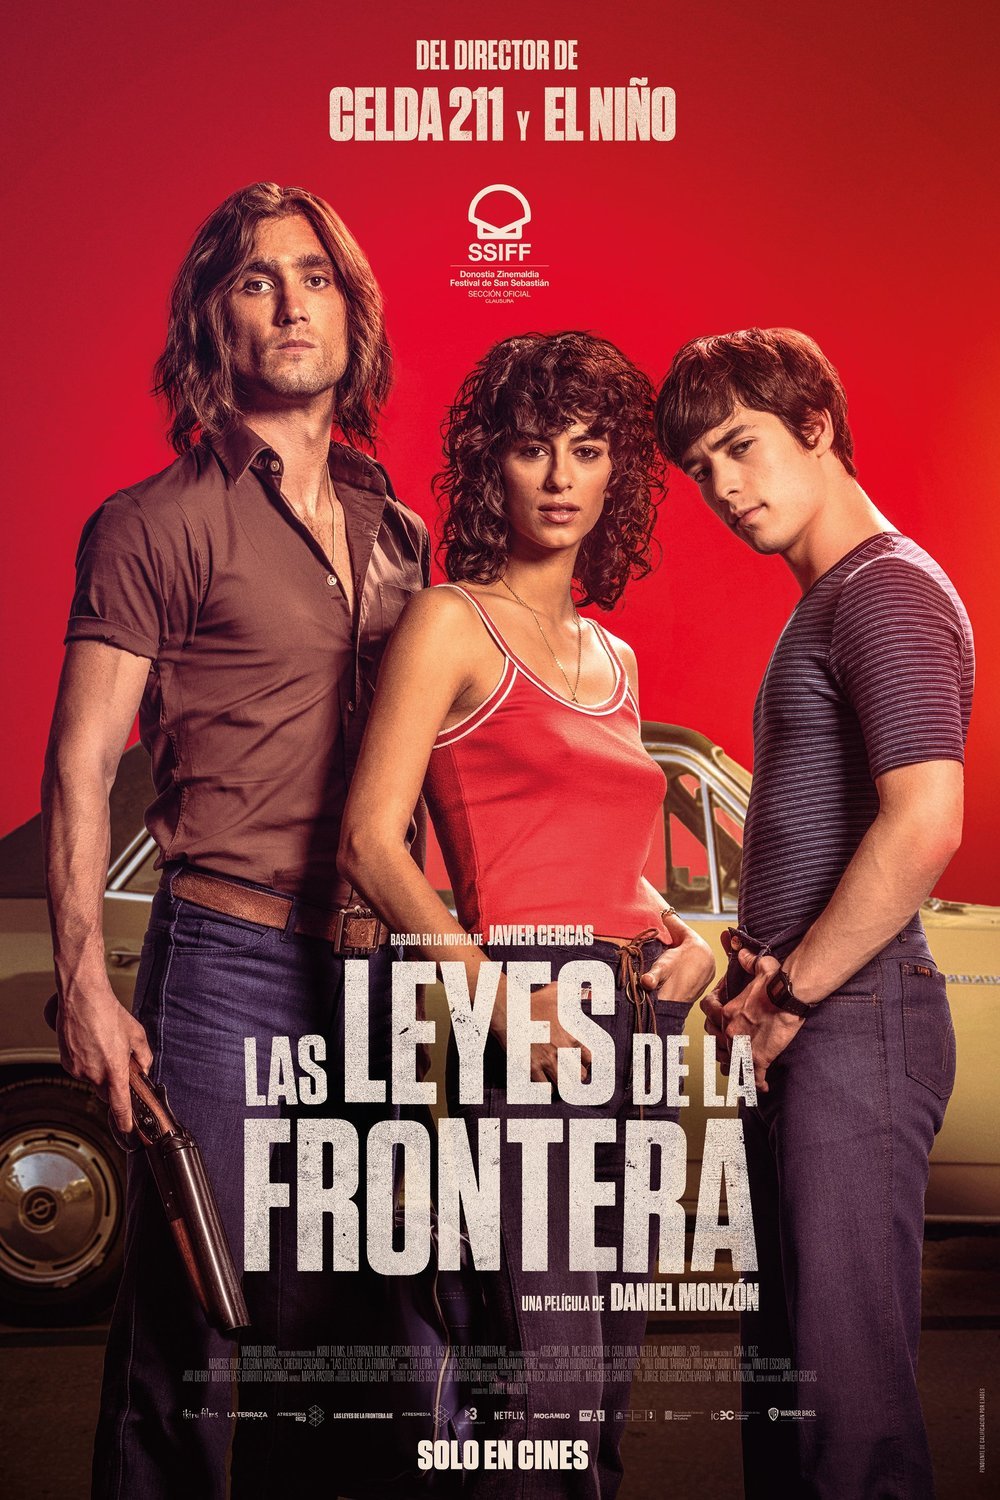 L'affiche originale du film Las leyes de la frontera en espagnol